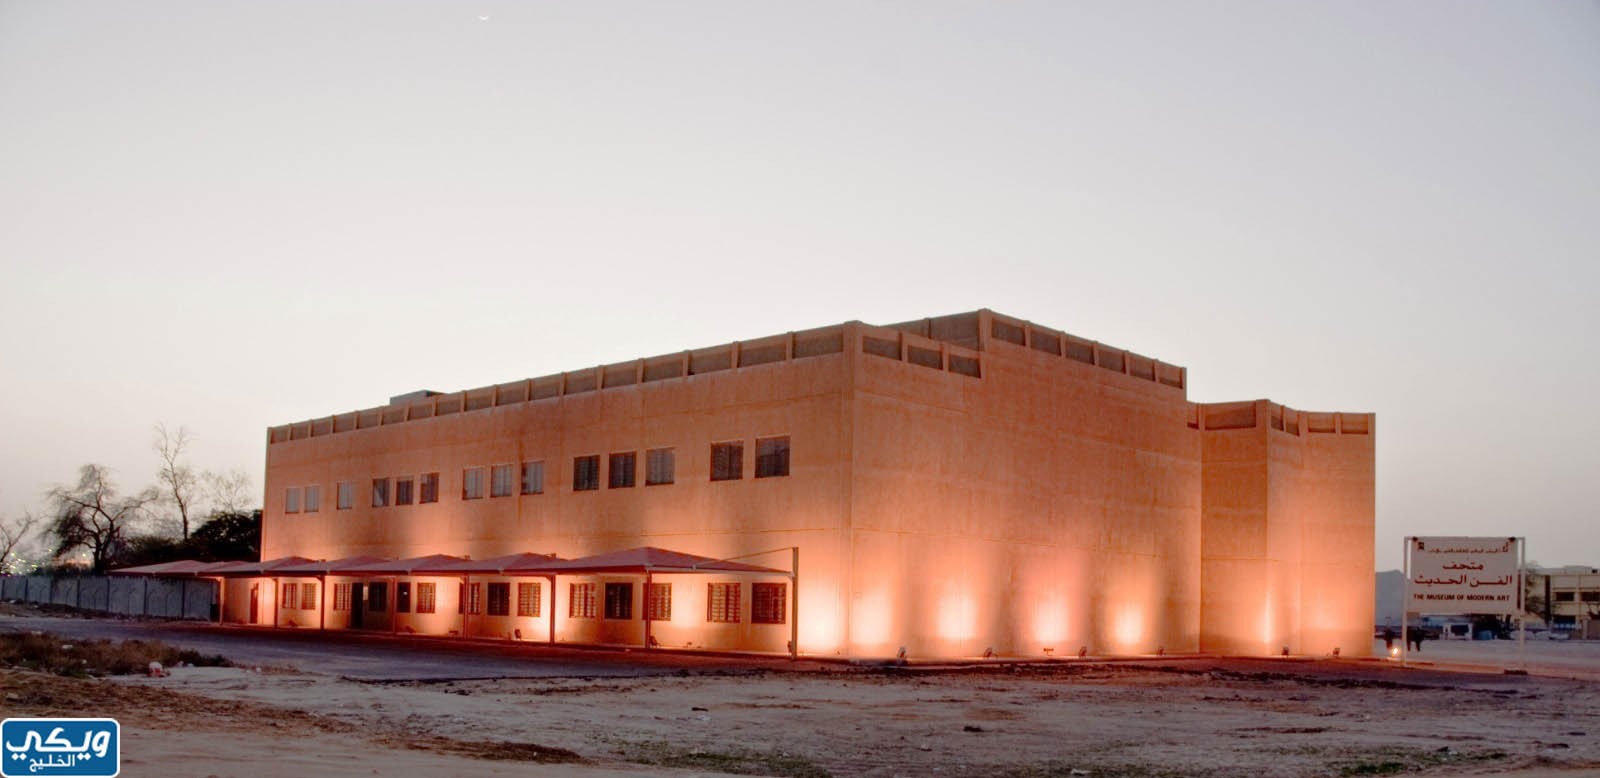 متى بني متحف الكويت الوطني